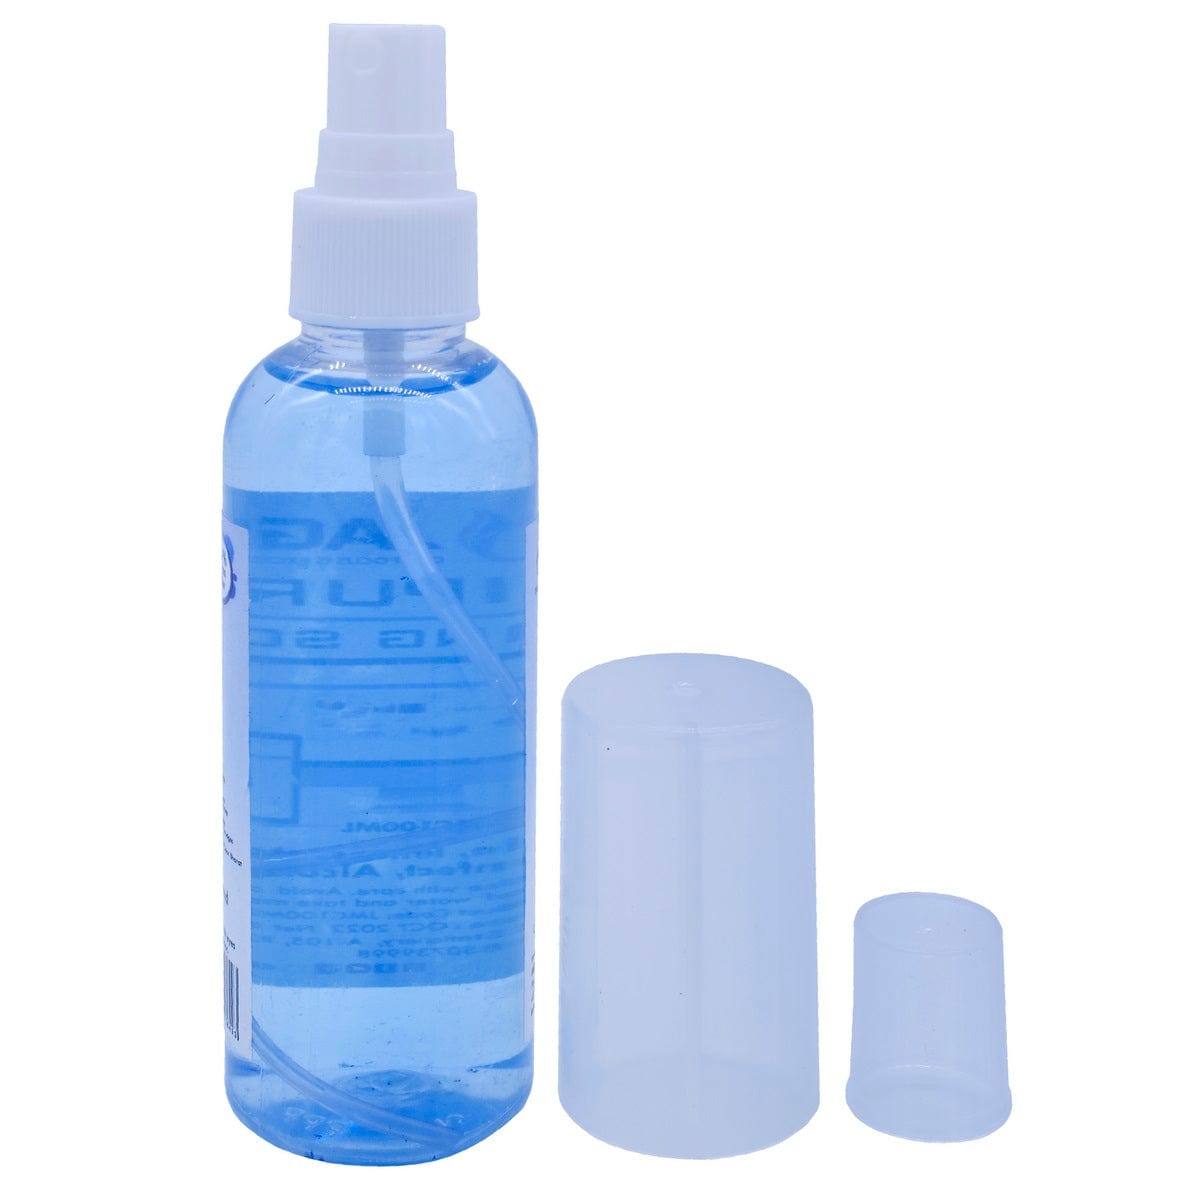 jags-mumbai Other material Multipurpose Cleaning Liquid 100ML